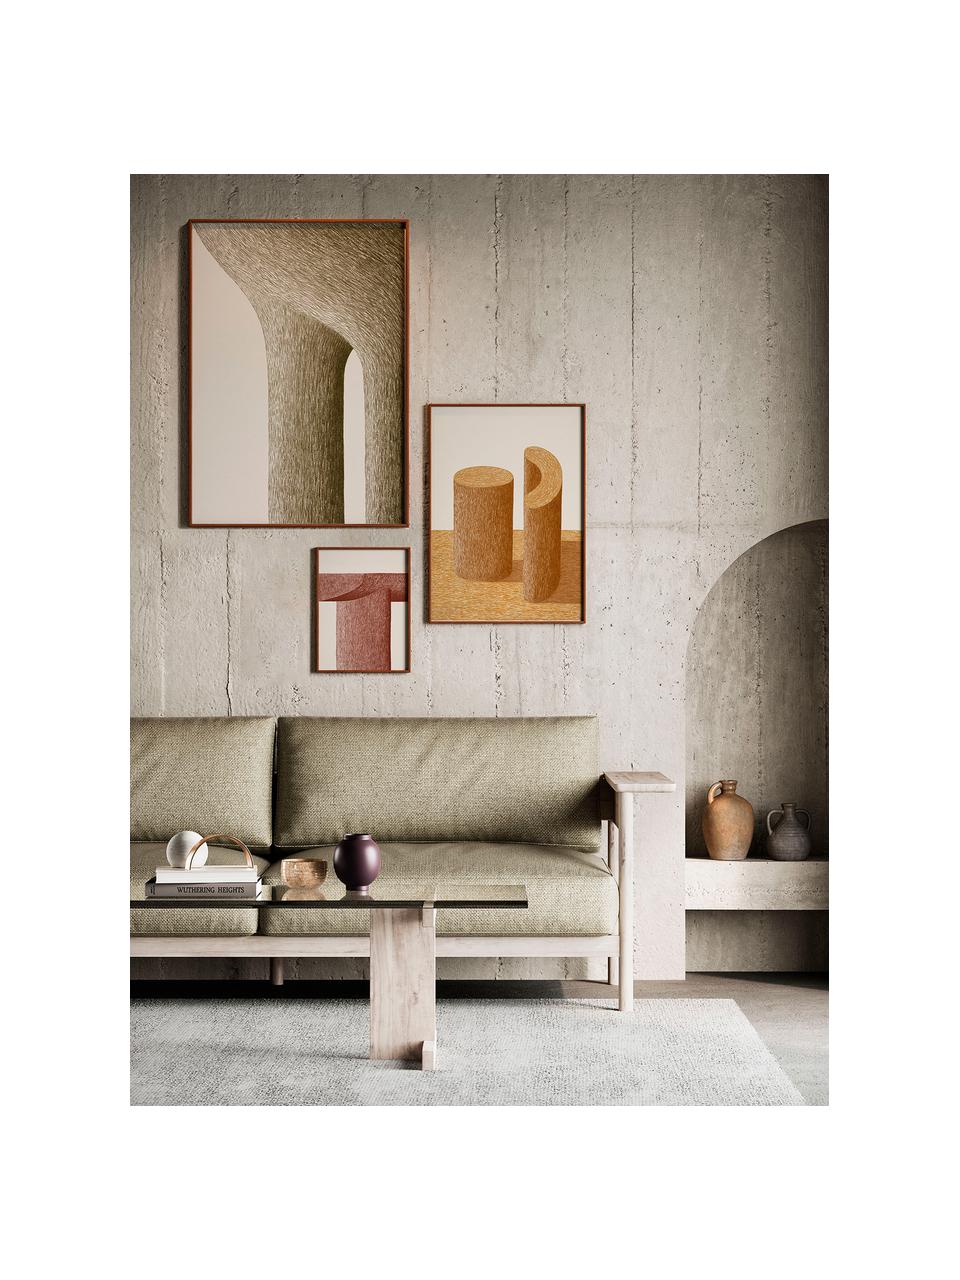 Poster Artwall no. 05 mit Rahmen, 3er-Set, Rahmen: Kiefernholz, Front: Plexiglas, Beige- und Brauntöne, Set mit verschiedenen Größen